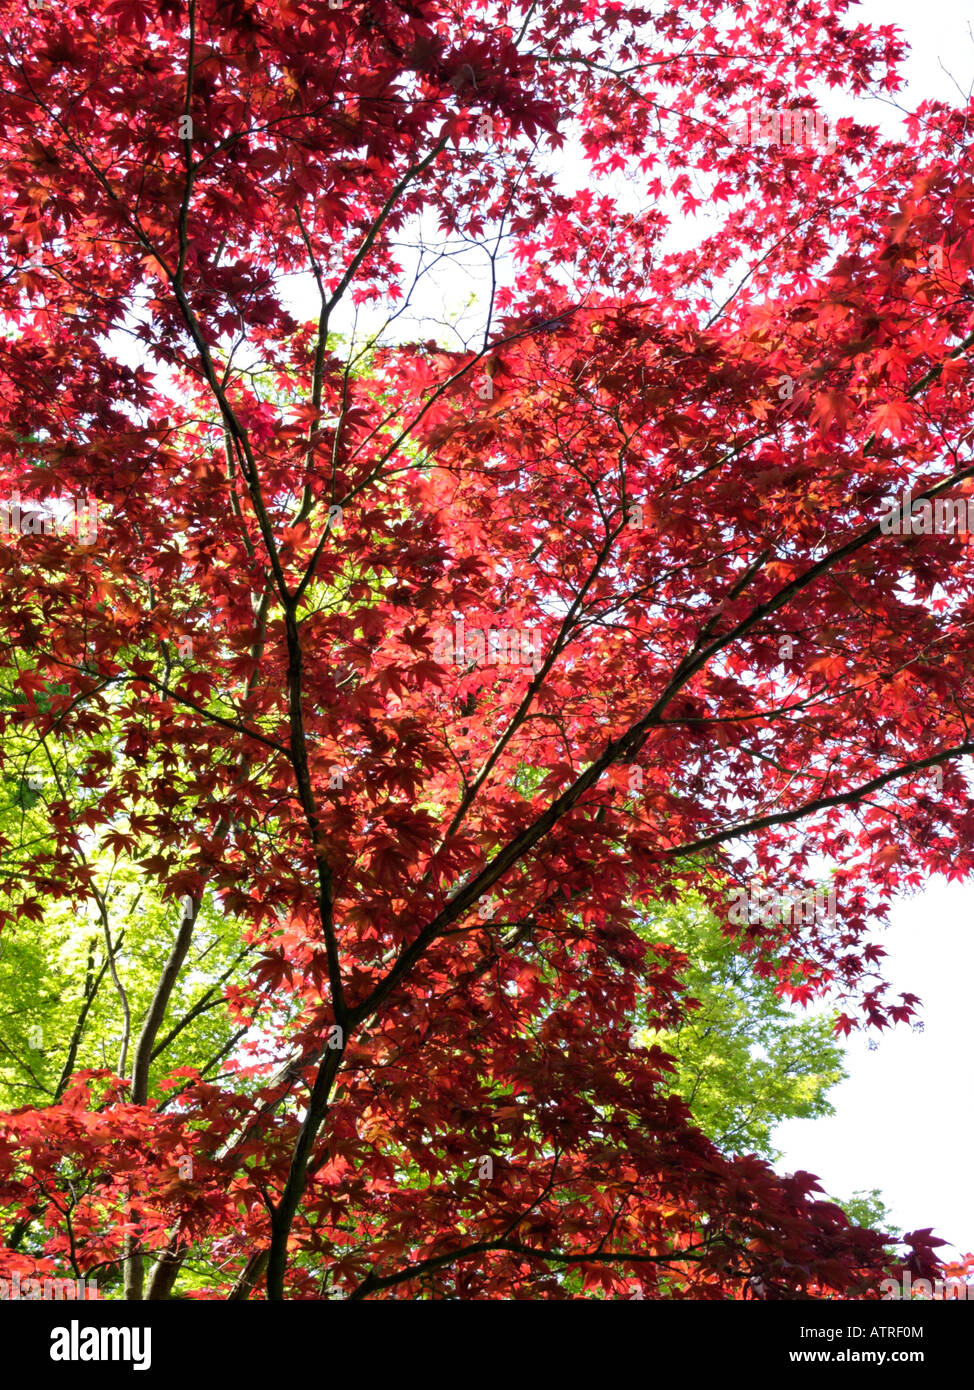 Japanese maple (Acer palmatum 'Atropurpureum') Stock Photo